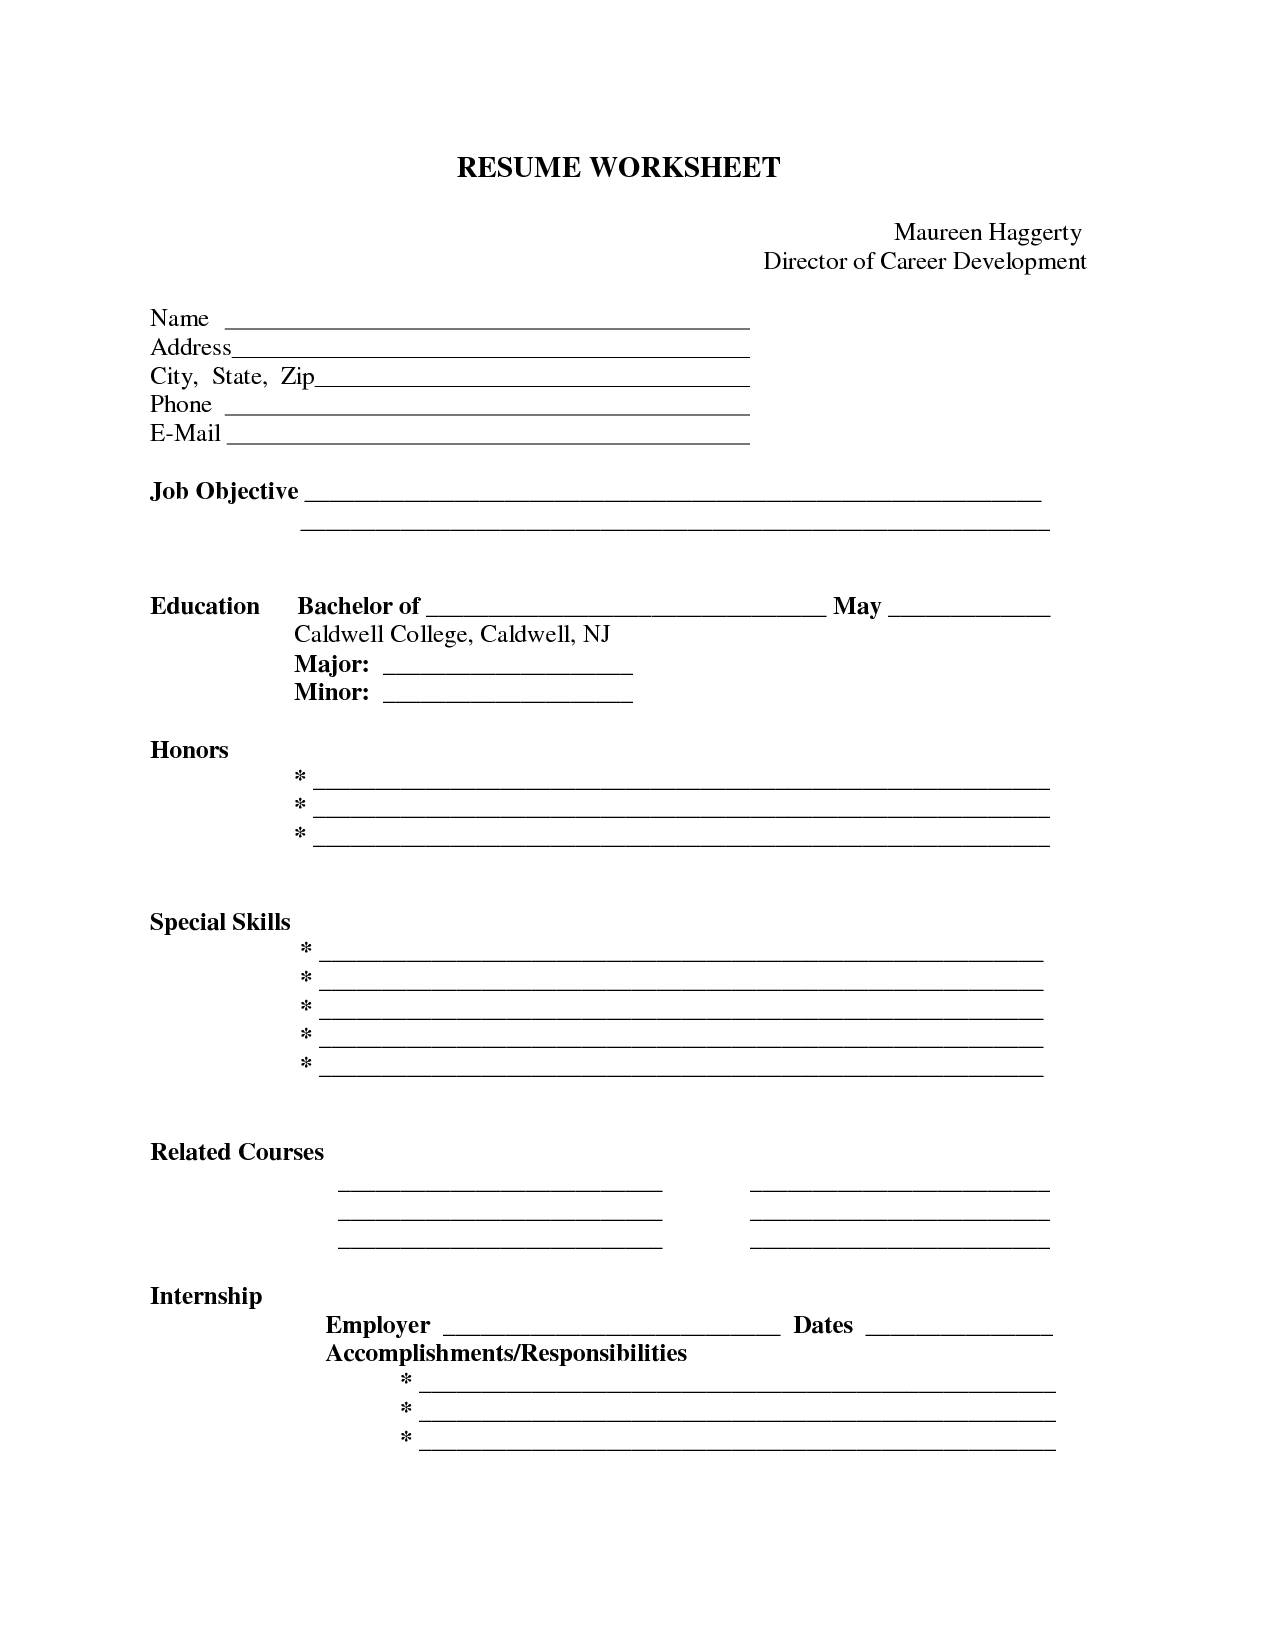 Blank Resume Form Worksheet Free Printable Resume Format | Resume - Free Blank Resume Forms Printable